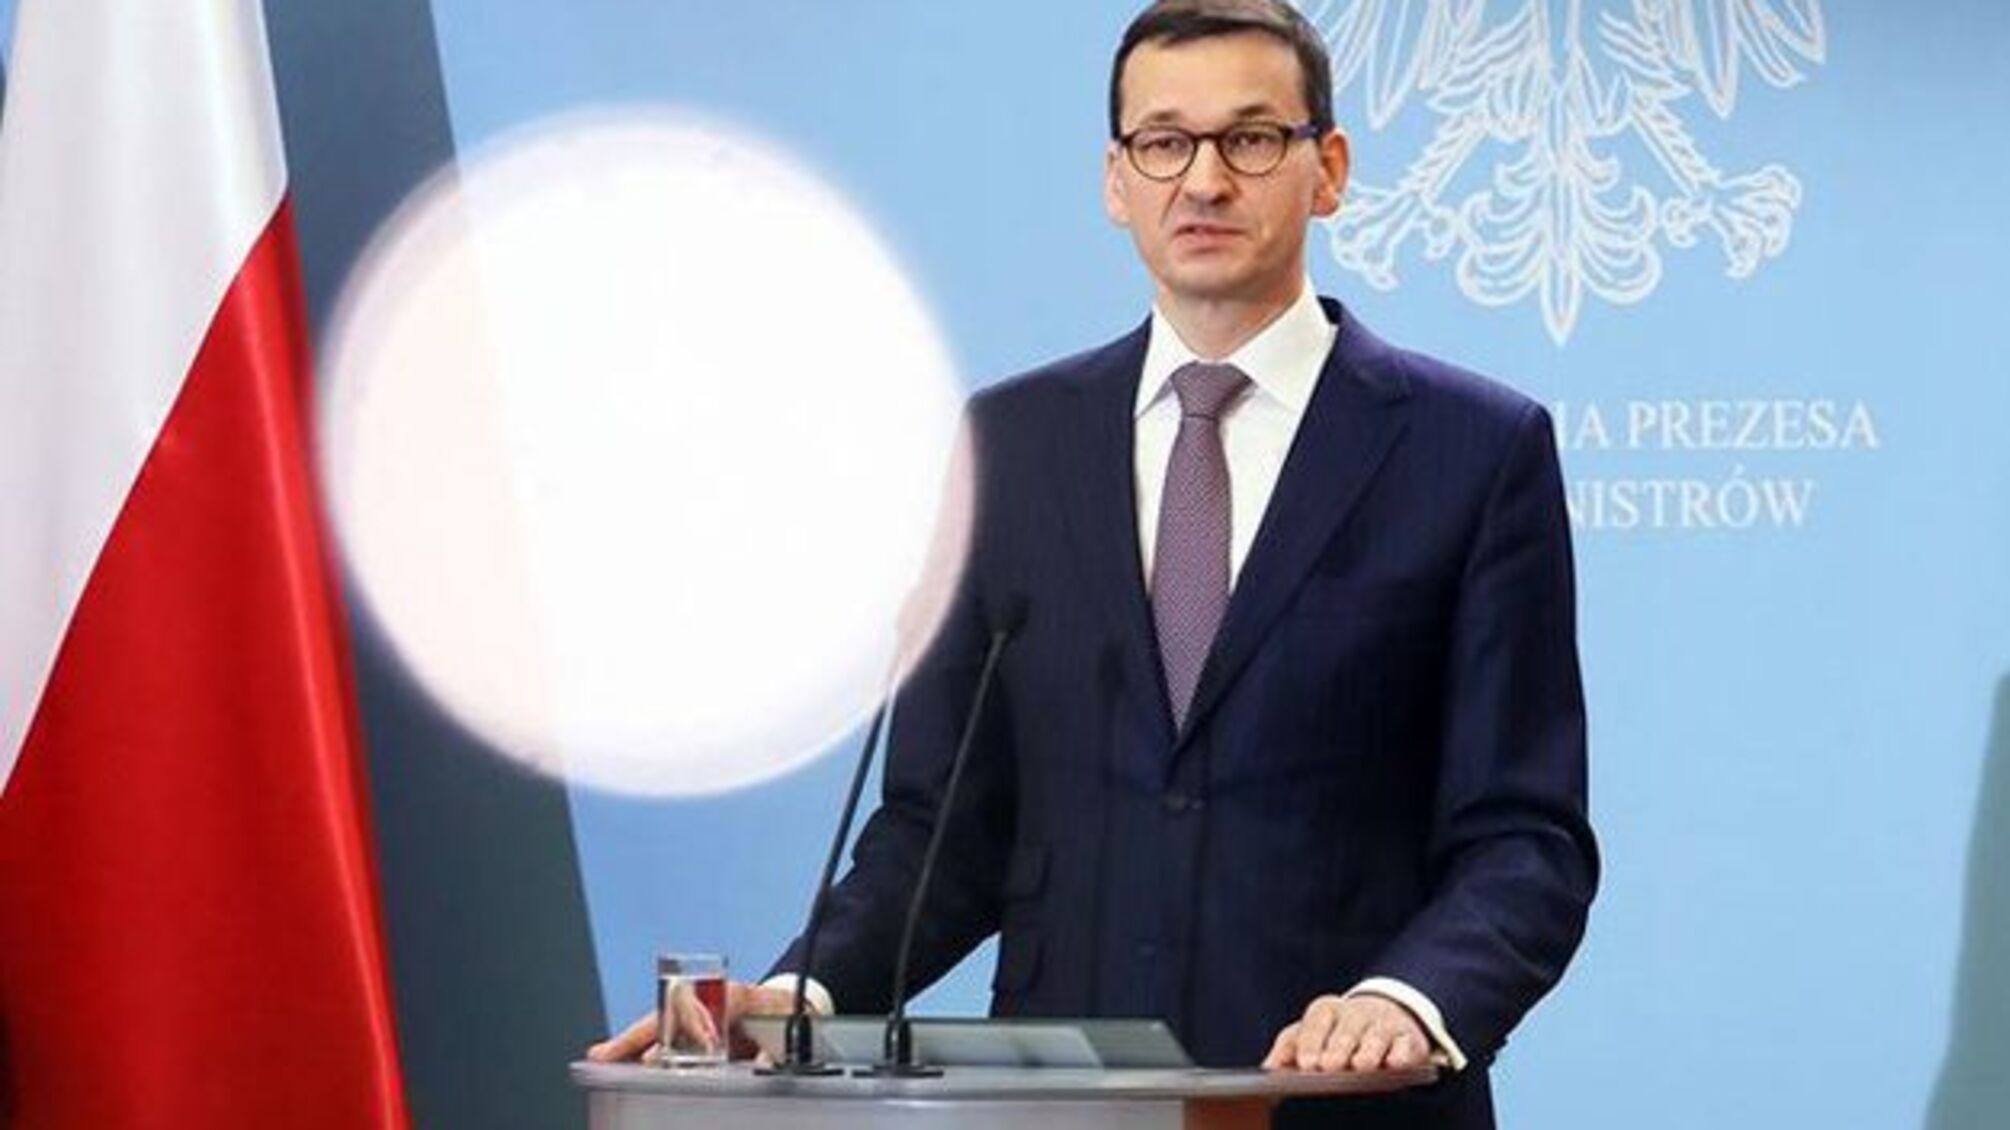 Моравецький: Польща не погоджується на централізацію повноважень ЄС